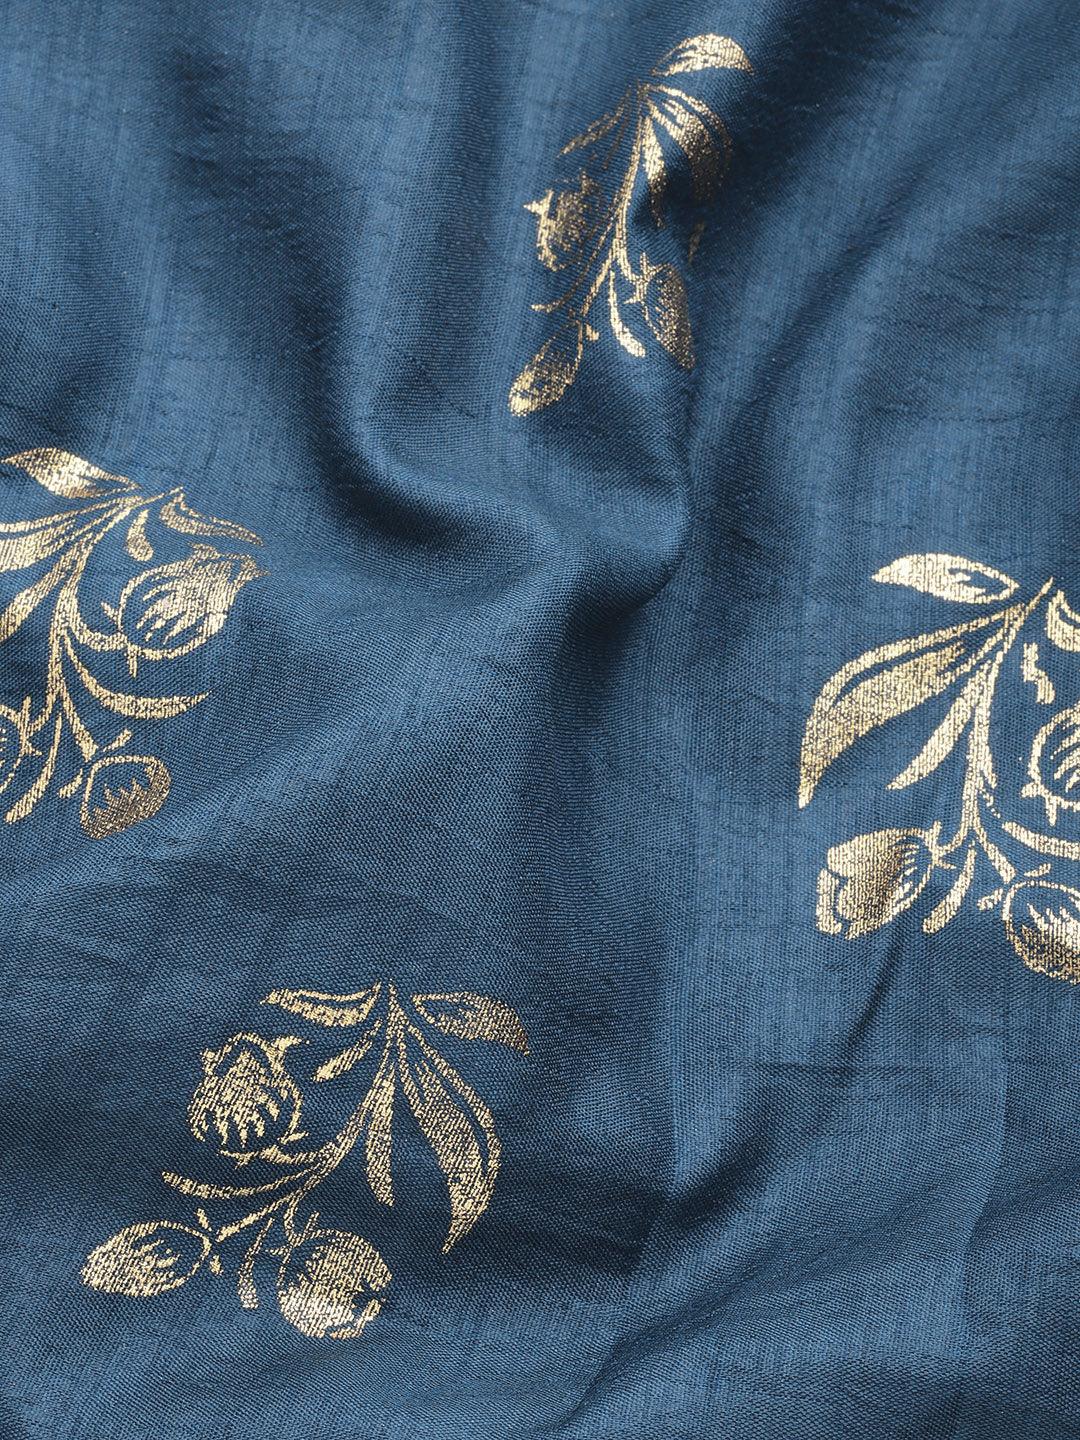 Teal Printed Silk Blend Saree - Libas